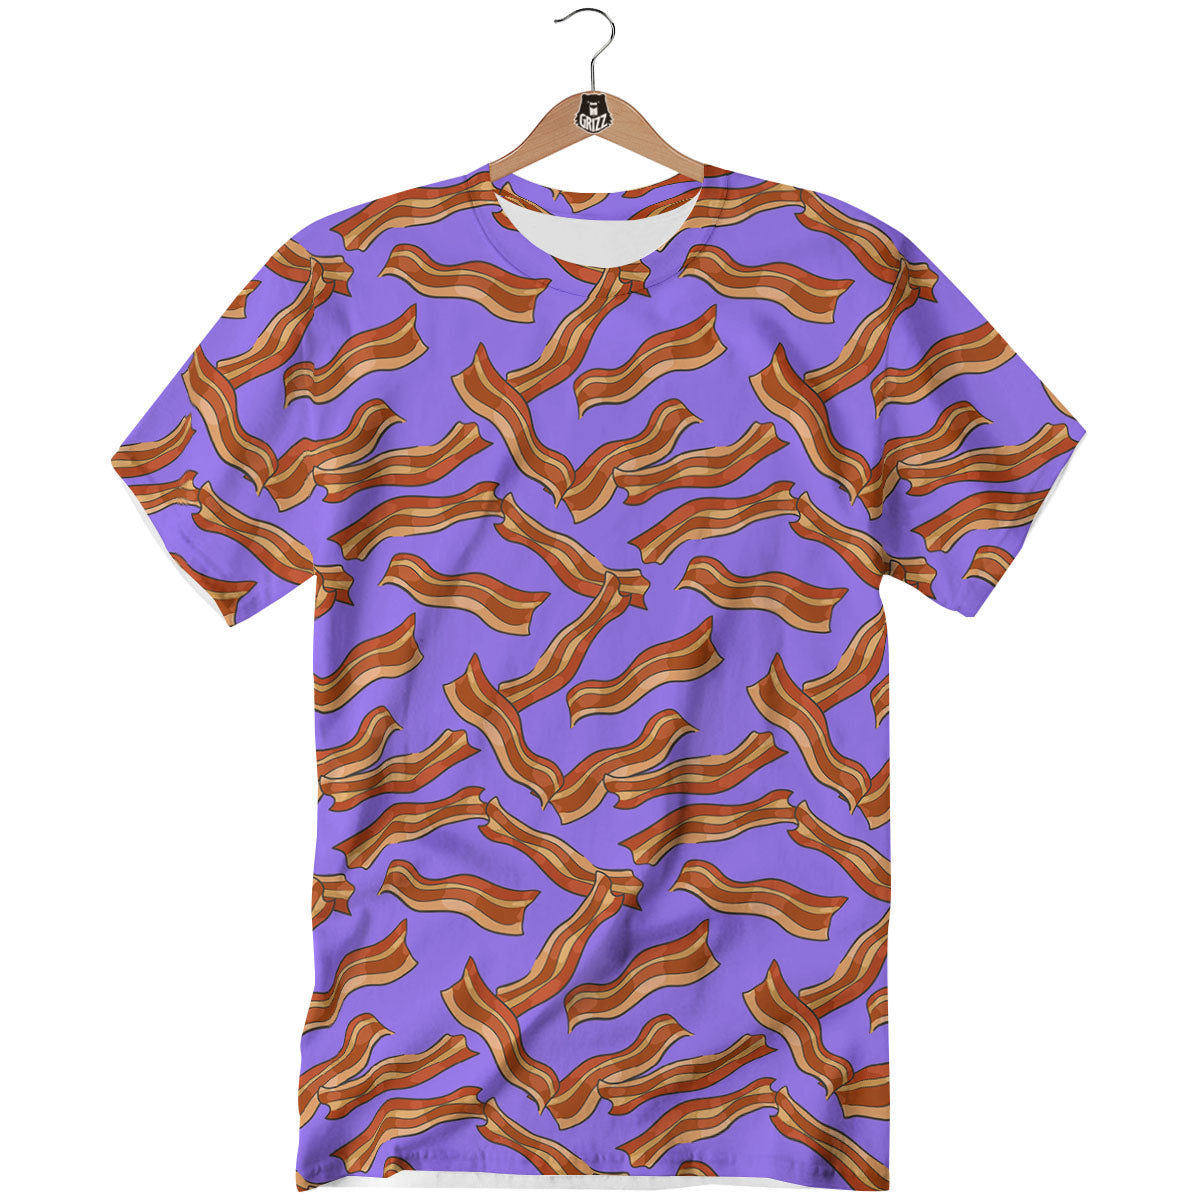 Purple bacon t-shirt  Bacon tshirt, Purple t shirts, Free t shirt design